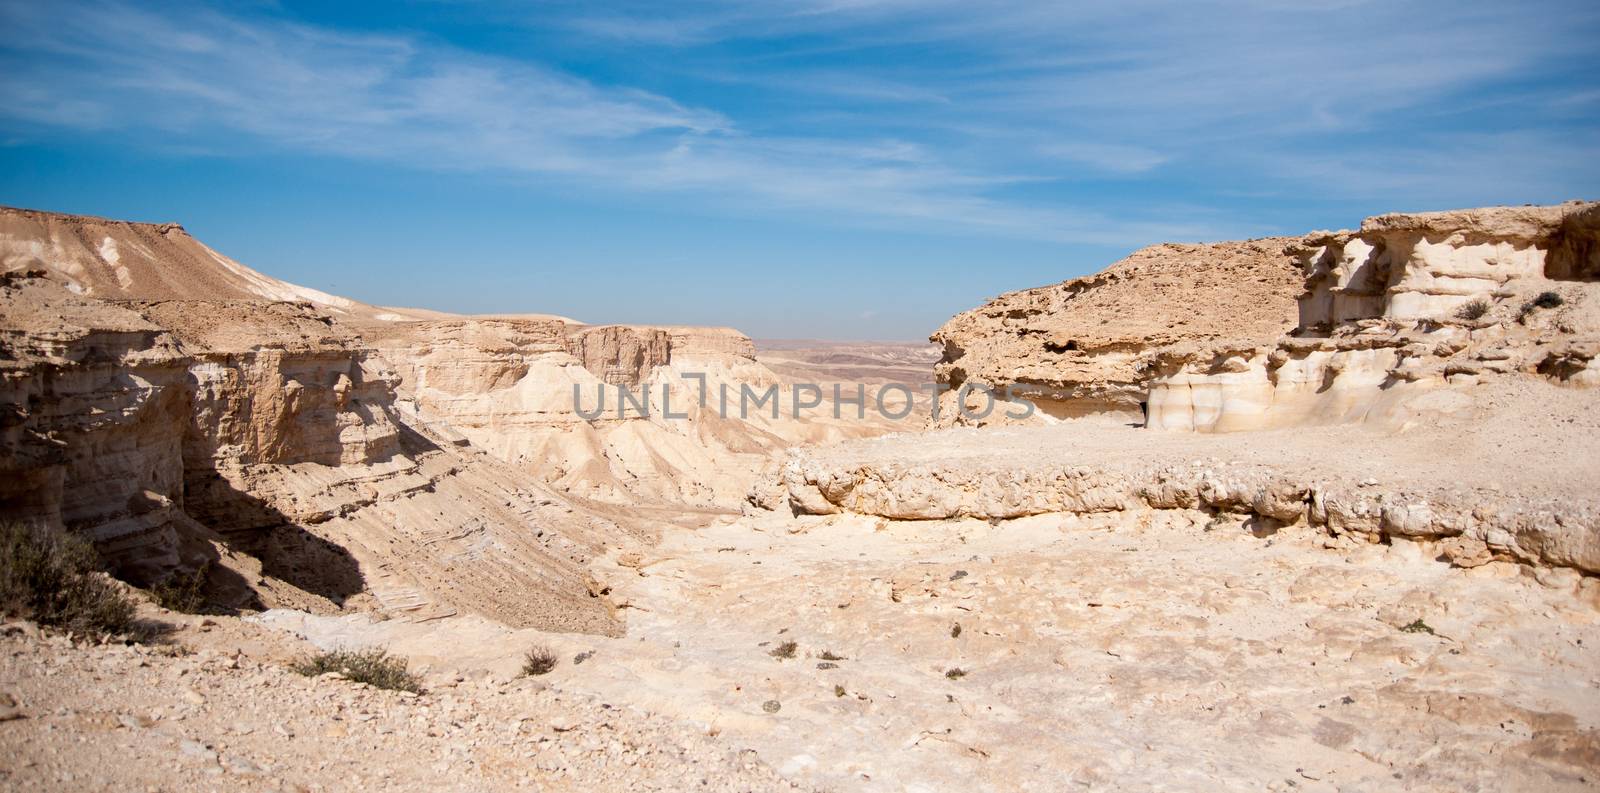 Travel in Negev desert, Israel by javax